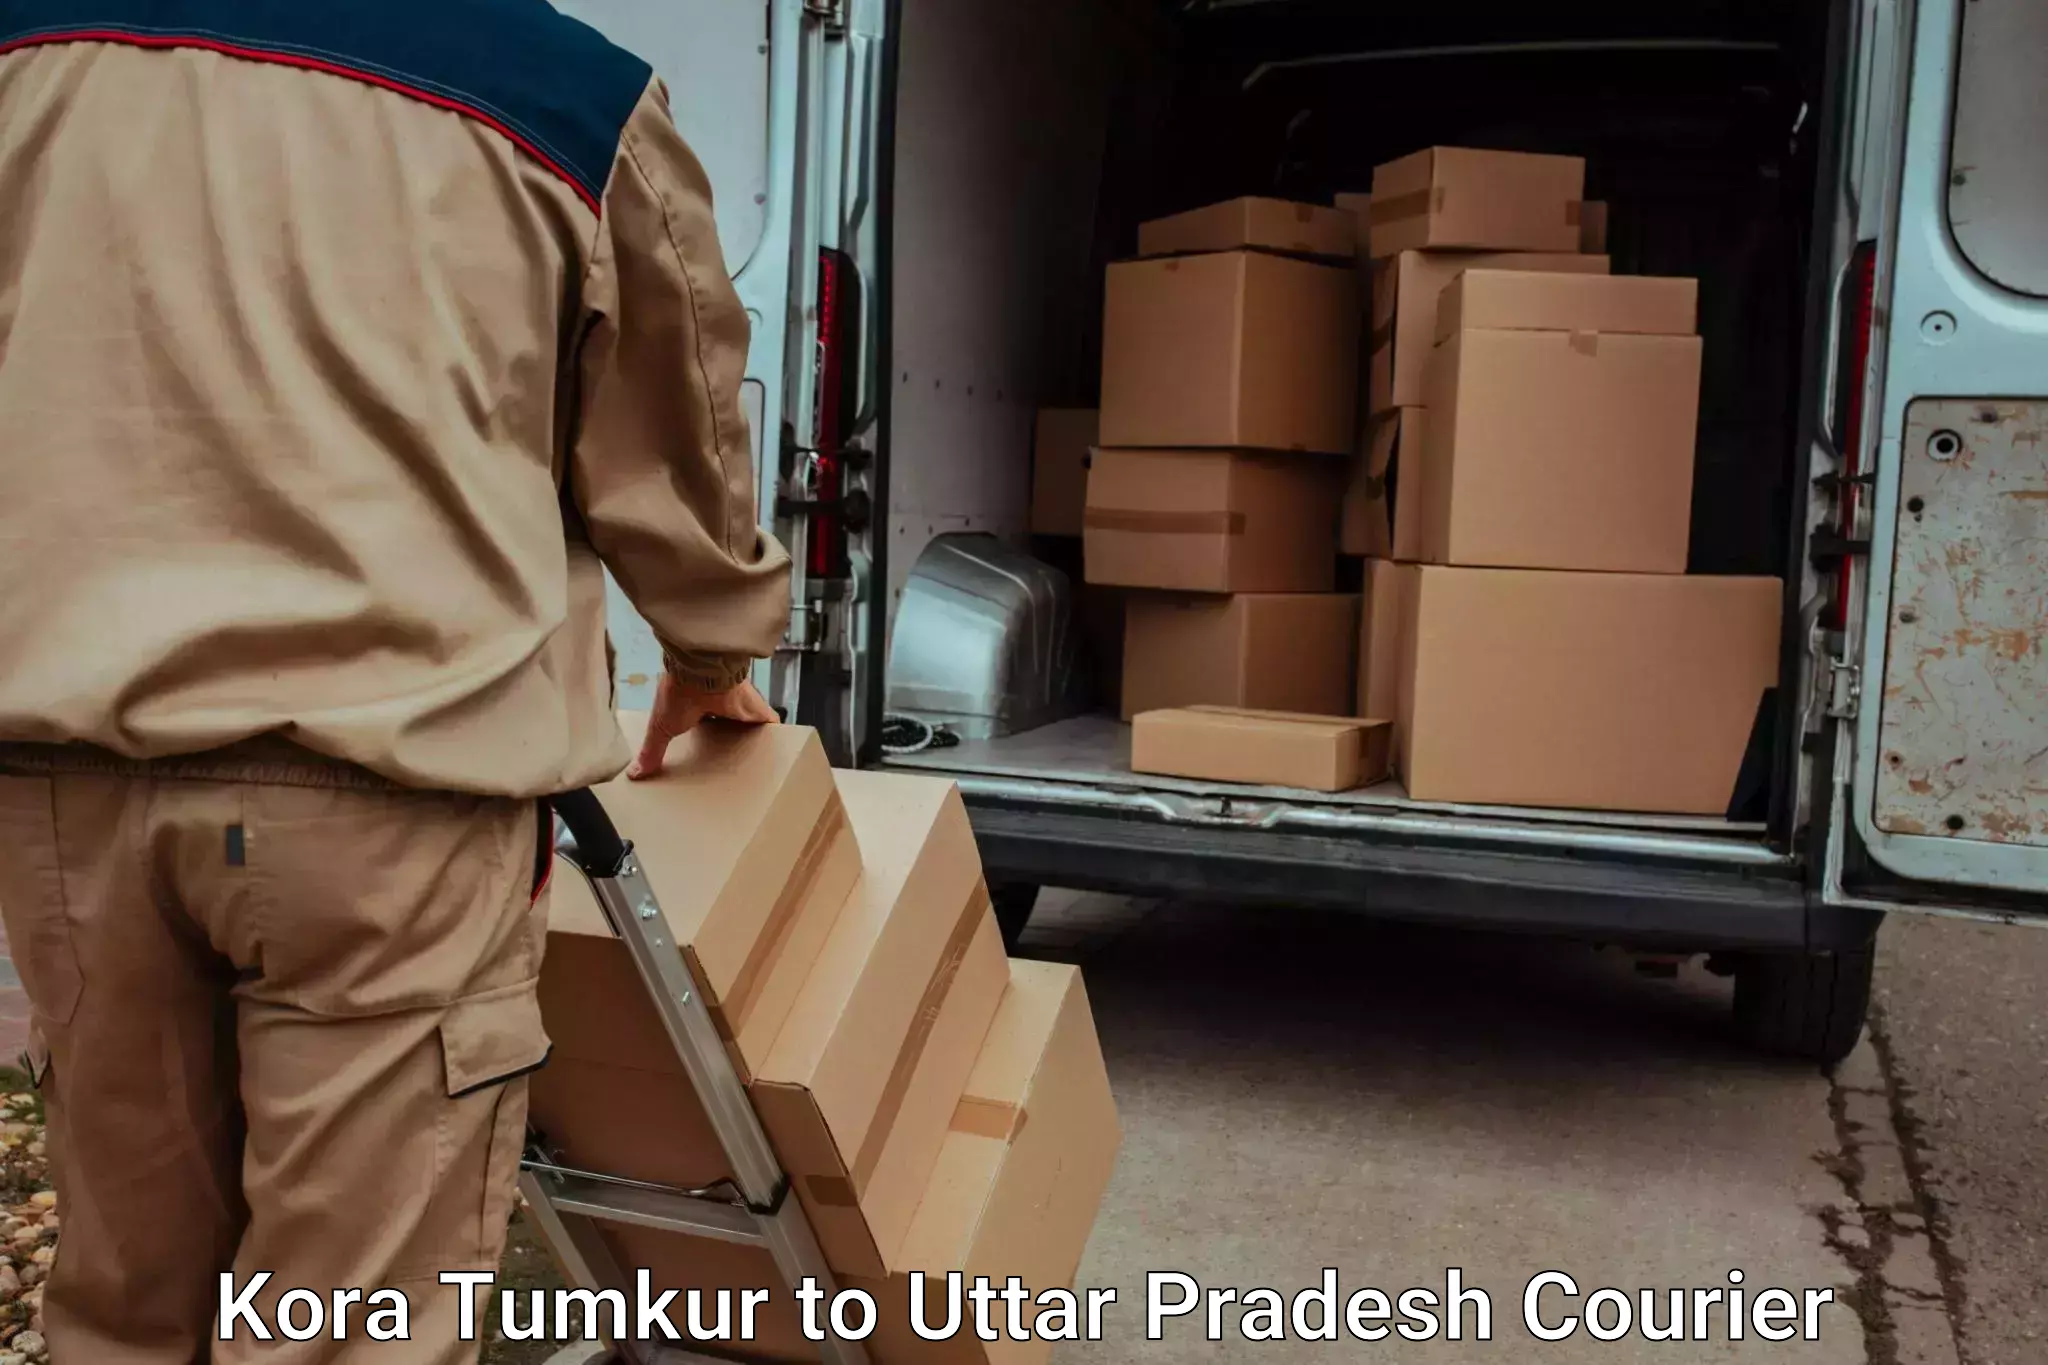 Skilled furniture movers Kora Tumkur to Varanasi